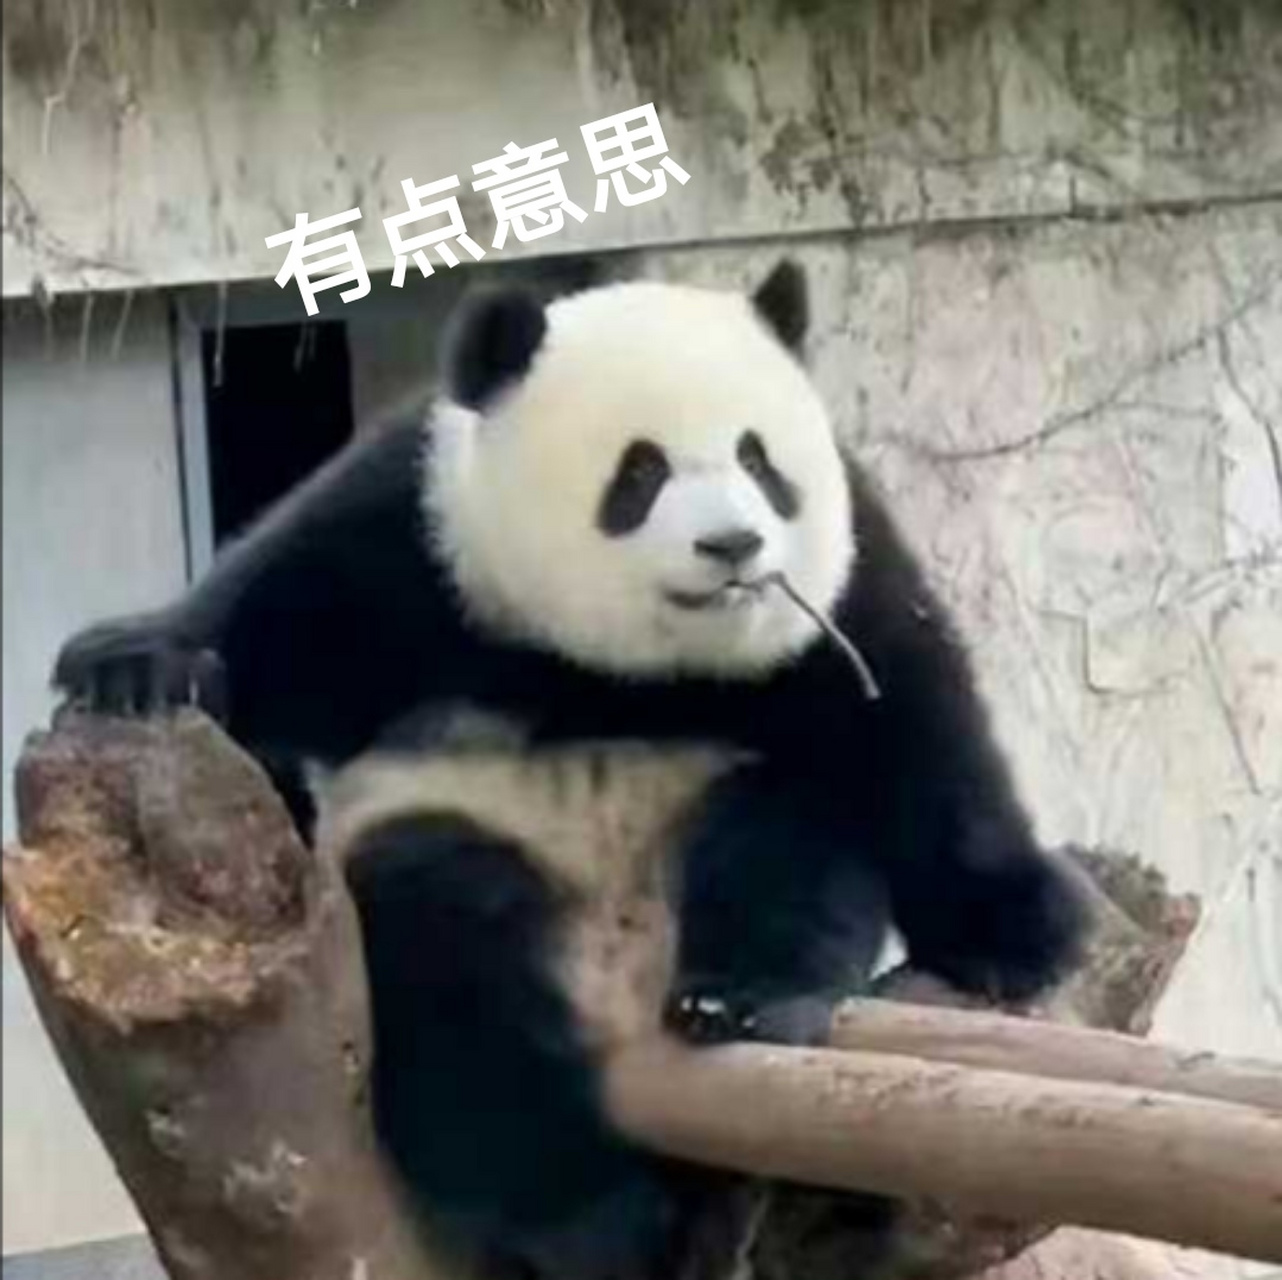 大熊猫实力演绎表情包有点意思